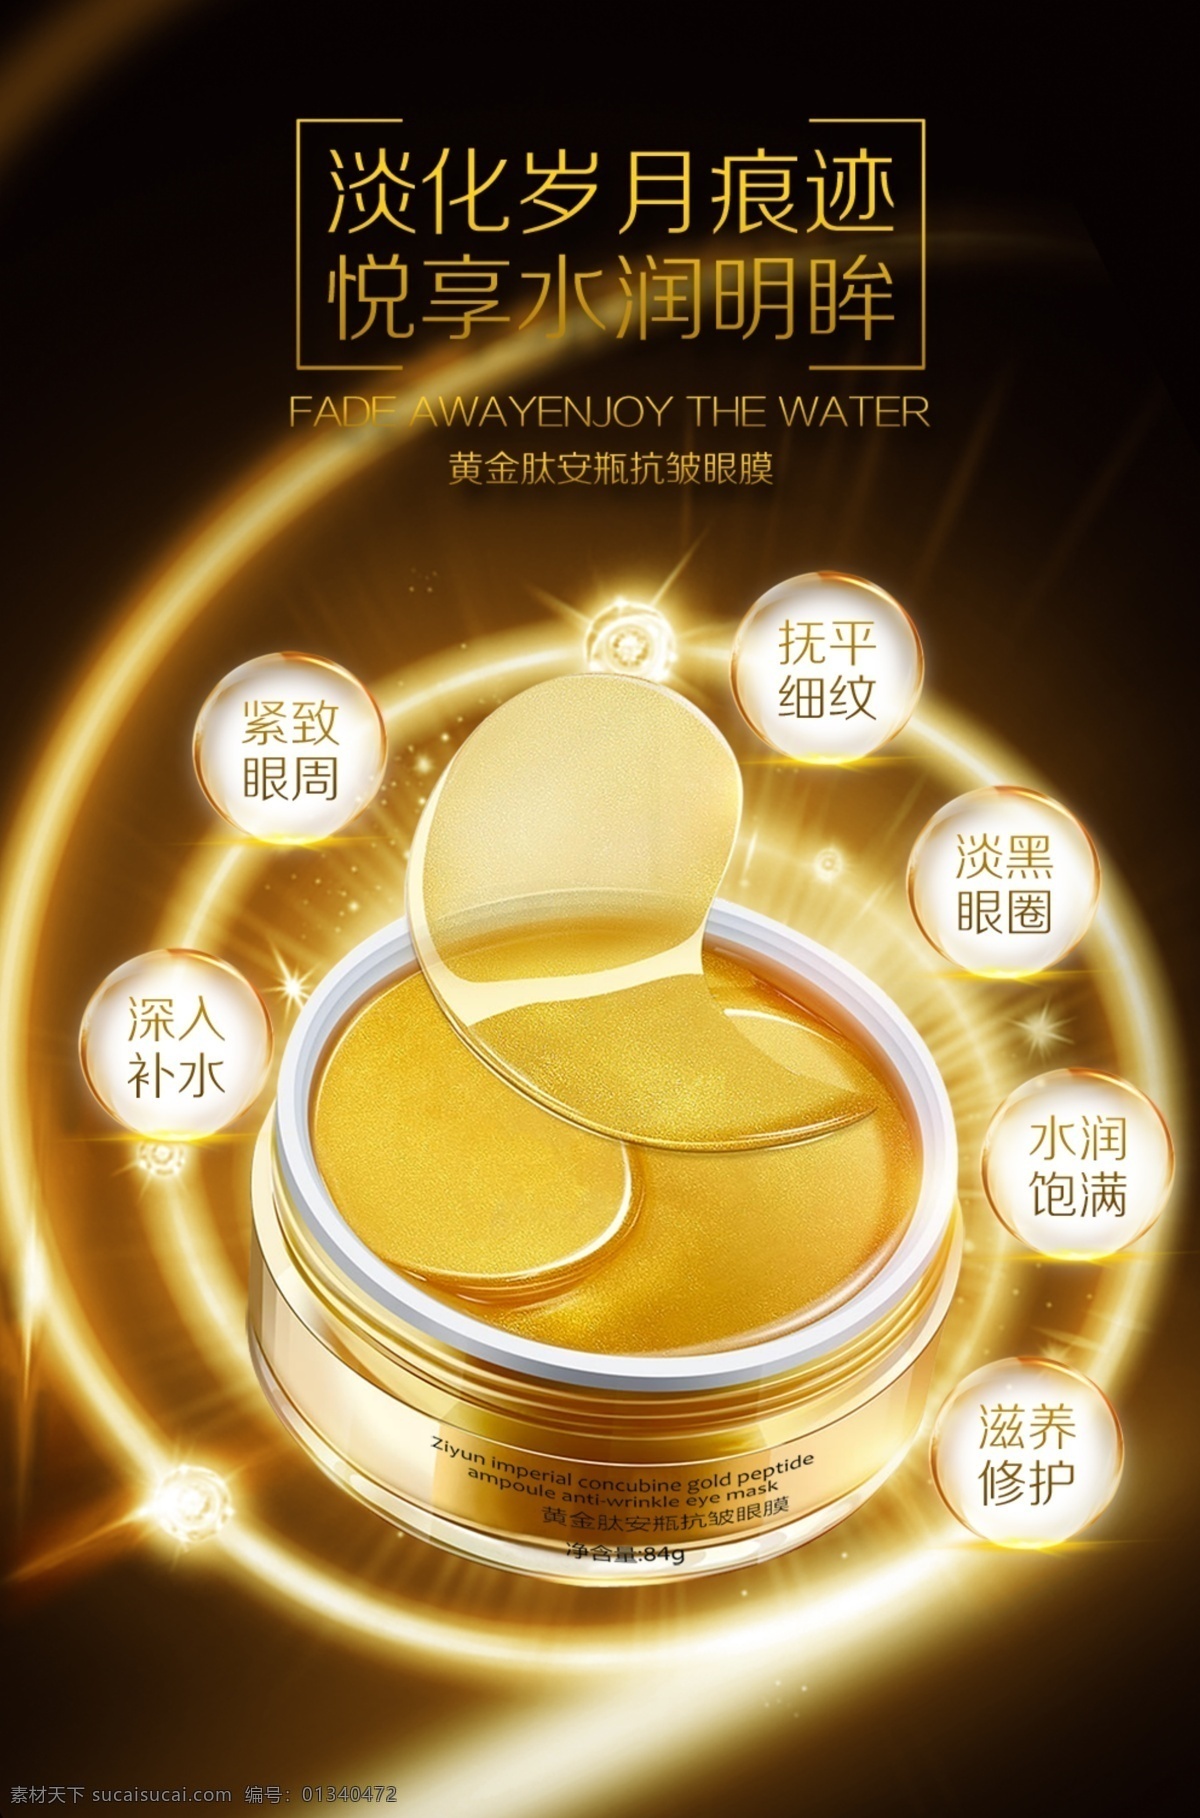 黄金 肽 安 瓶 紧 致 眼膜 宣传 广告 眼膜广告 化妆品海报 眼膜素材 化妆品素材 眼膜海报